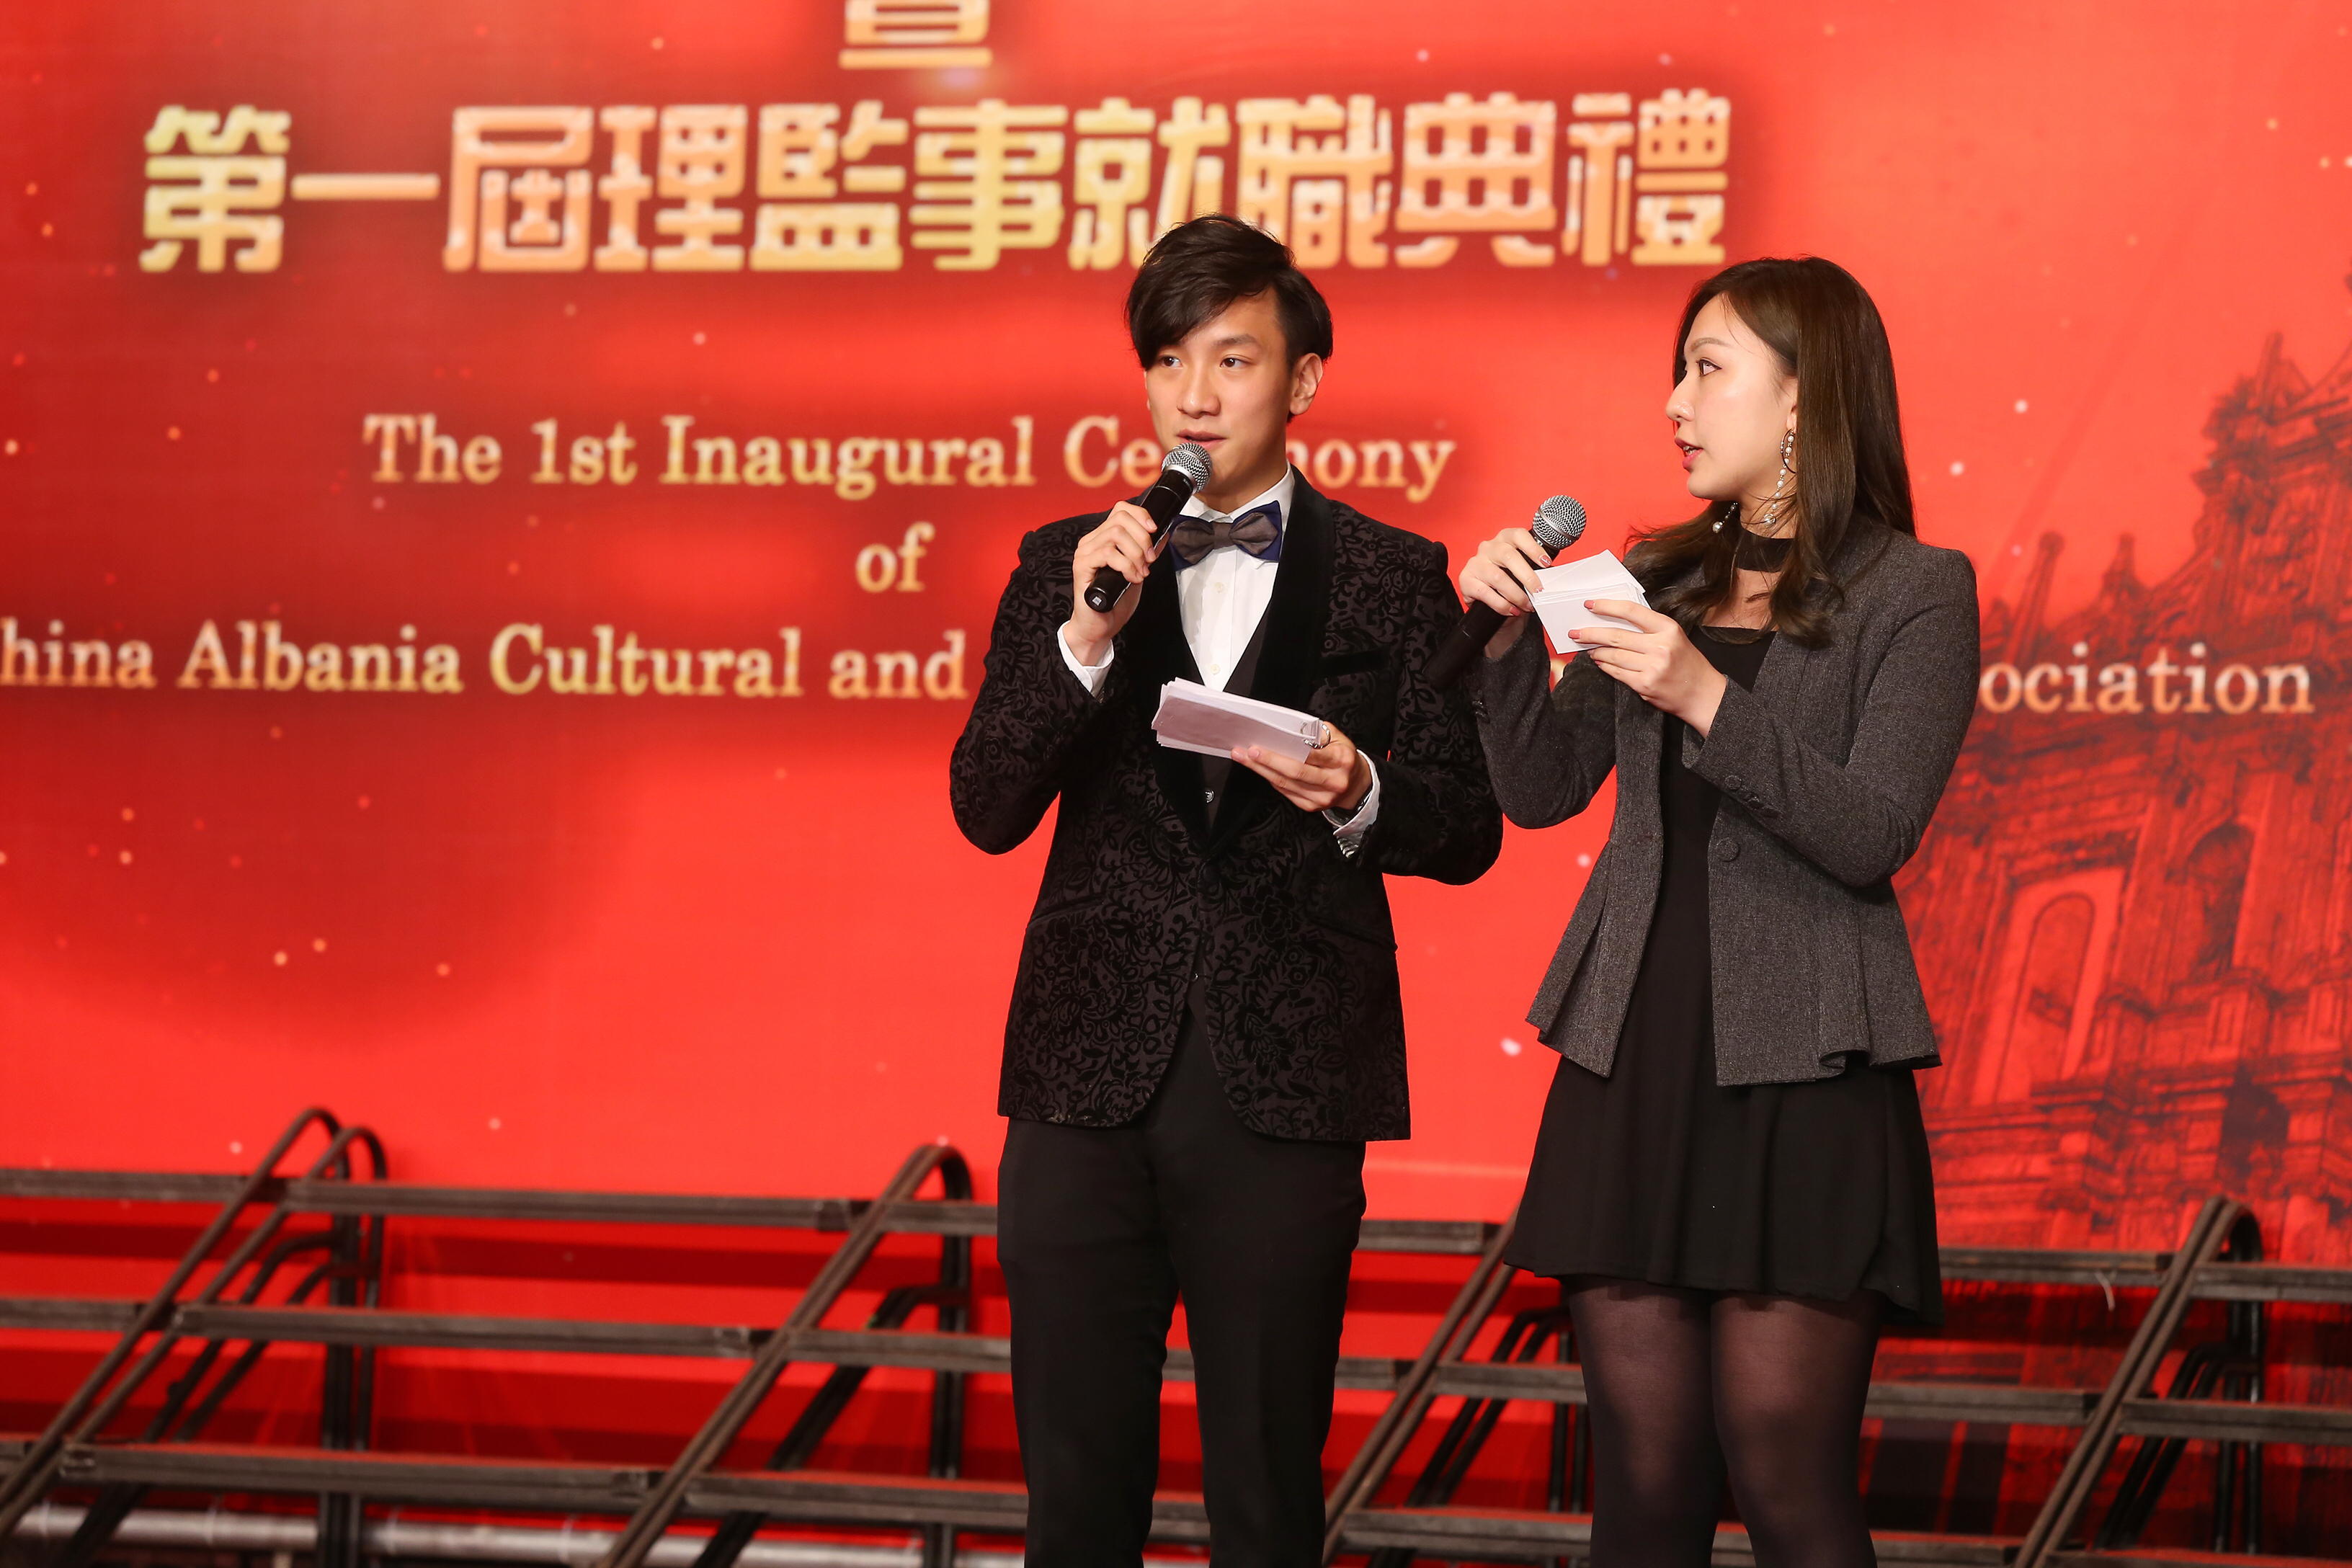 周啓陽 Elvis Chao之司儀主持紀錄: 雙語司儀_The Inaugural Ceremony of Macao of China Albania Cultural and Economic Promotion Association